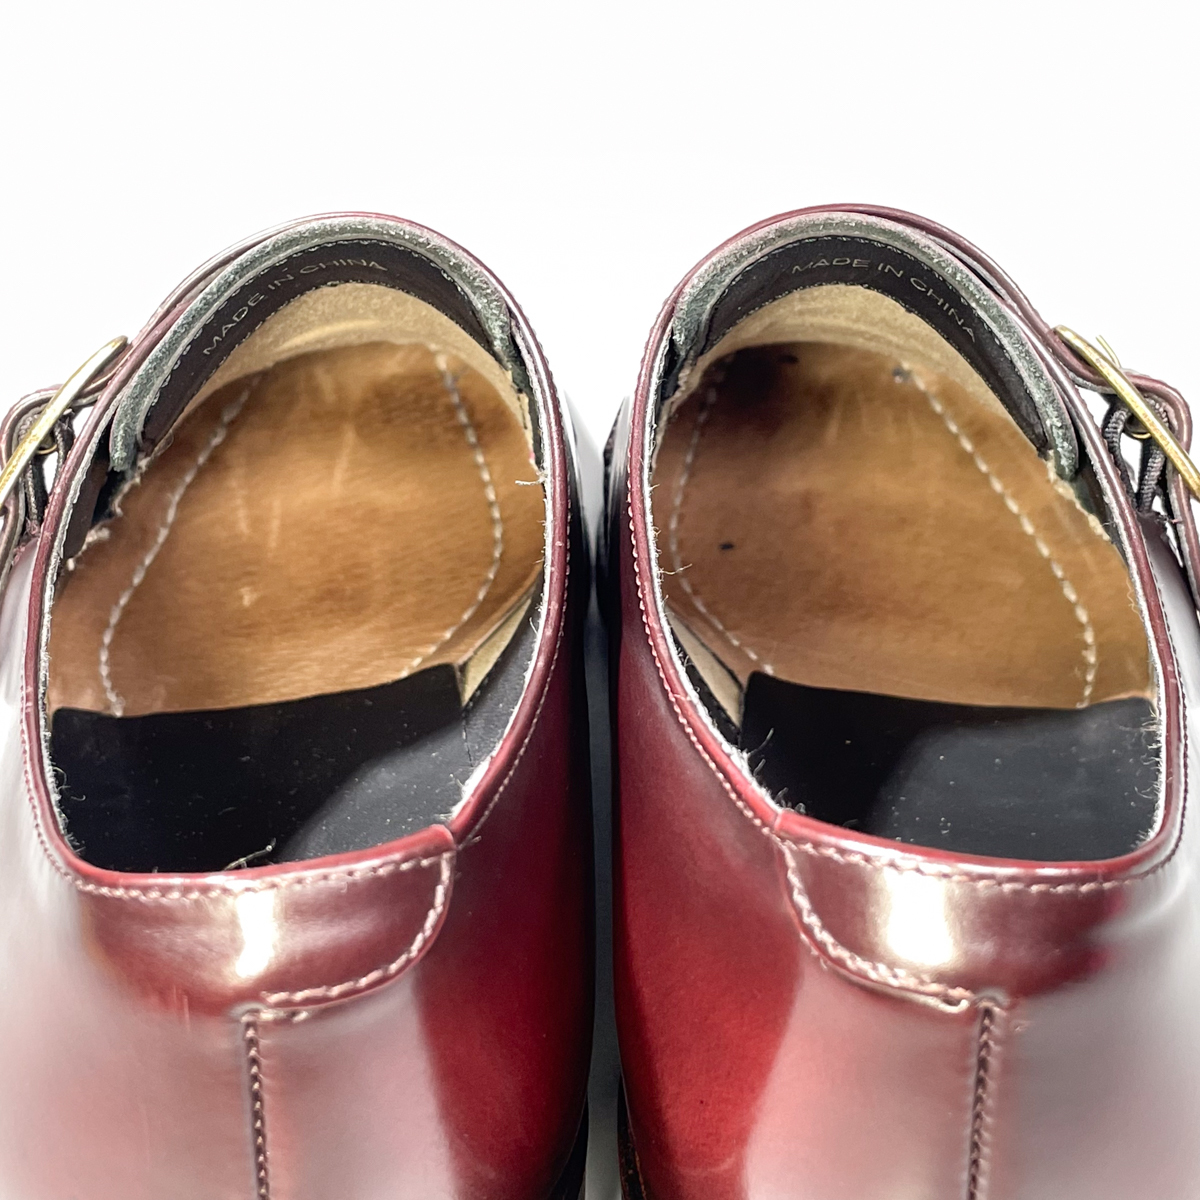 即決 REGAL リーガル モンクストラップ プレーントゥ ブラウン 茶色 メンズ 本革 レザー 革靴 24.5cm ビジネスシューズ フォーマル B1584_画像9